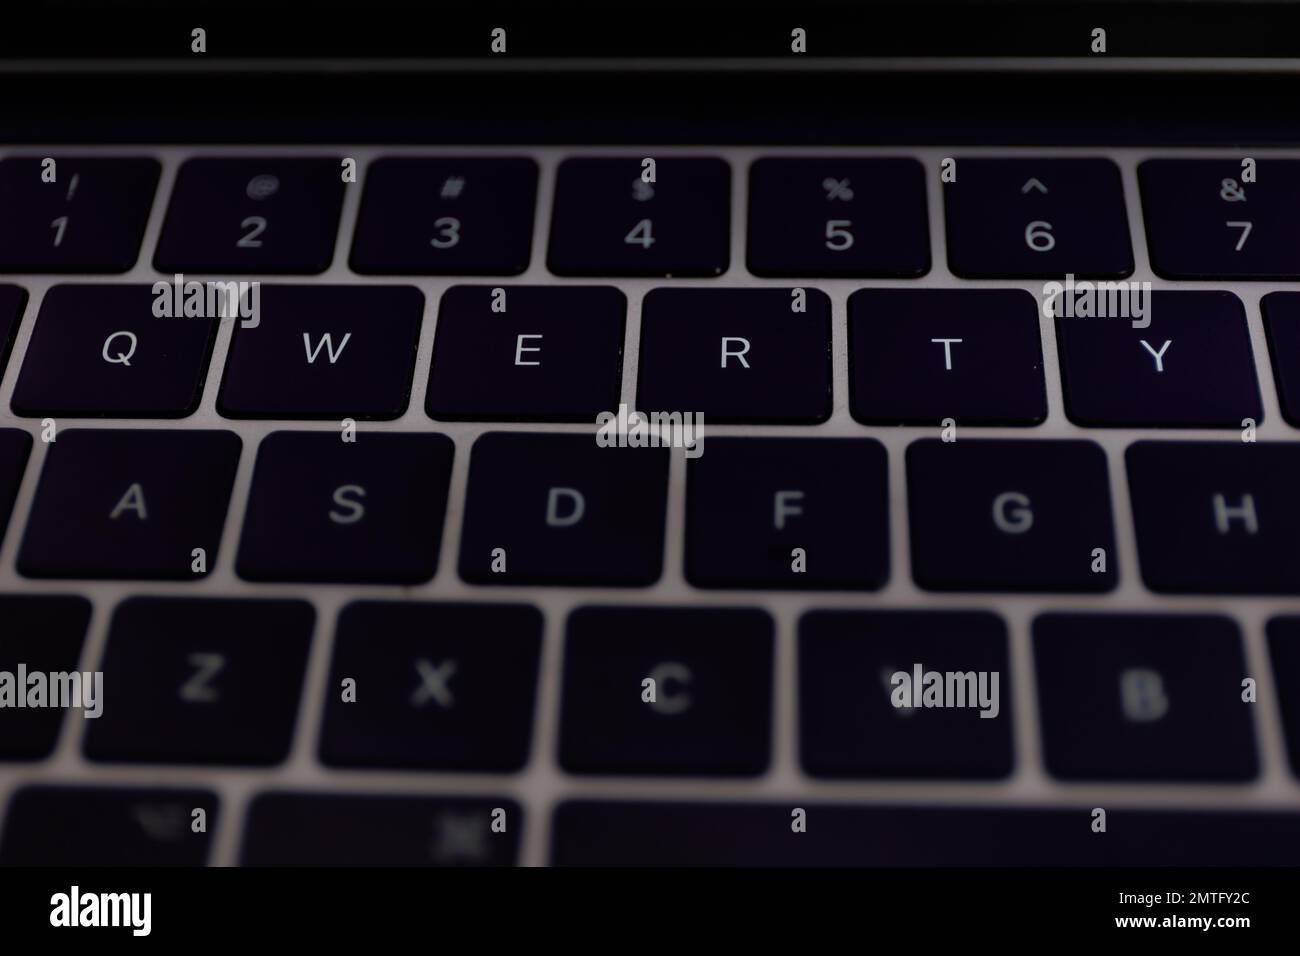 Captura de primer plano con teclado QWERTY. QWERTY es una disposición de teclado para alfabetos de escritura latina Foto de stock